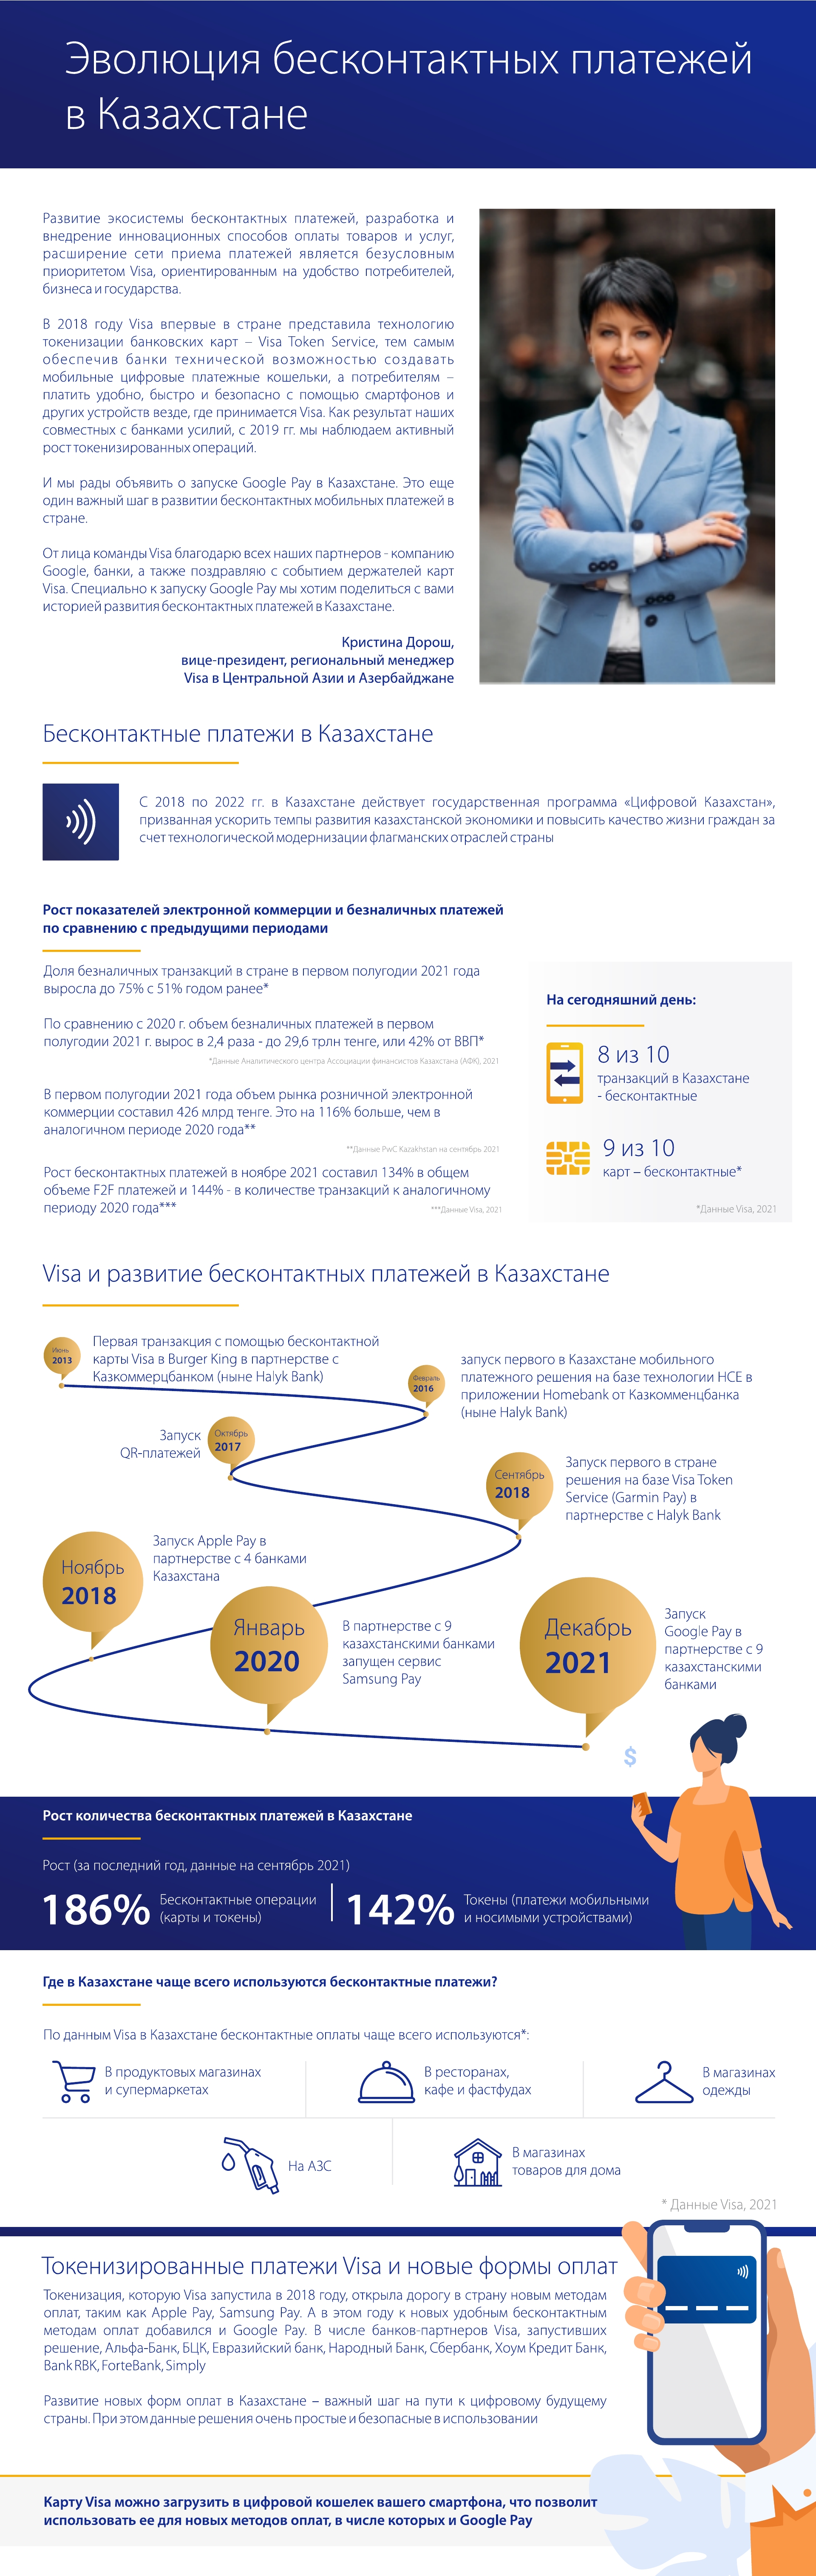 Эволюция бесконтактных платежей в Казахстане